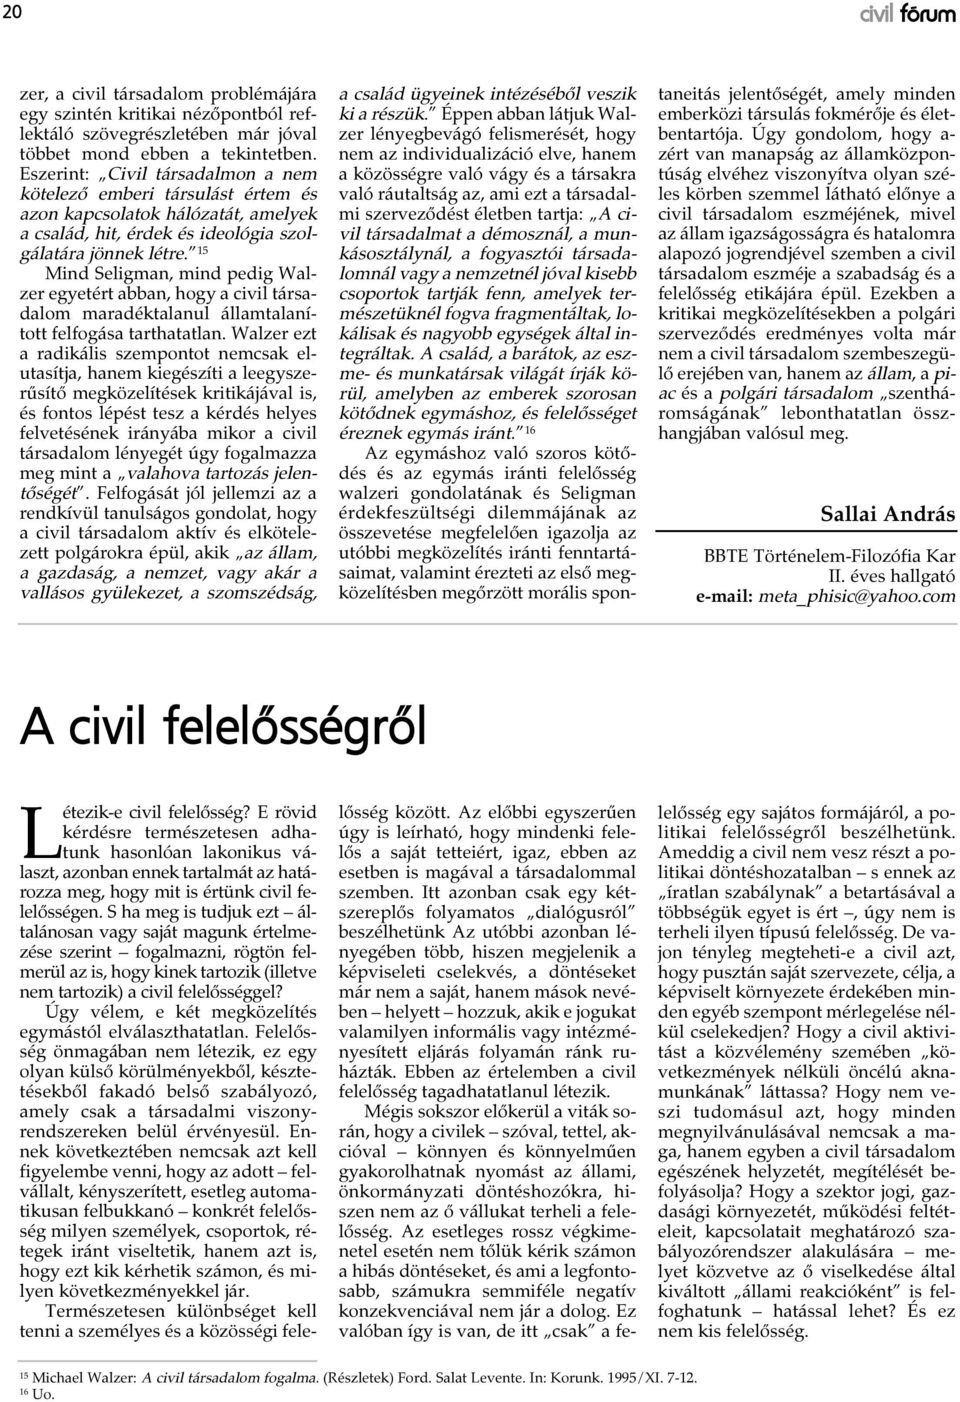 15 Mind Seligman, mind pedig Walzer egyetért abban, hogy a civil társadalom maradéktalanul államtalanított felfogása tarthatatlan.